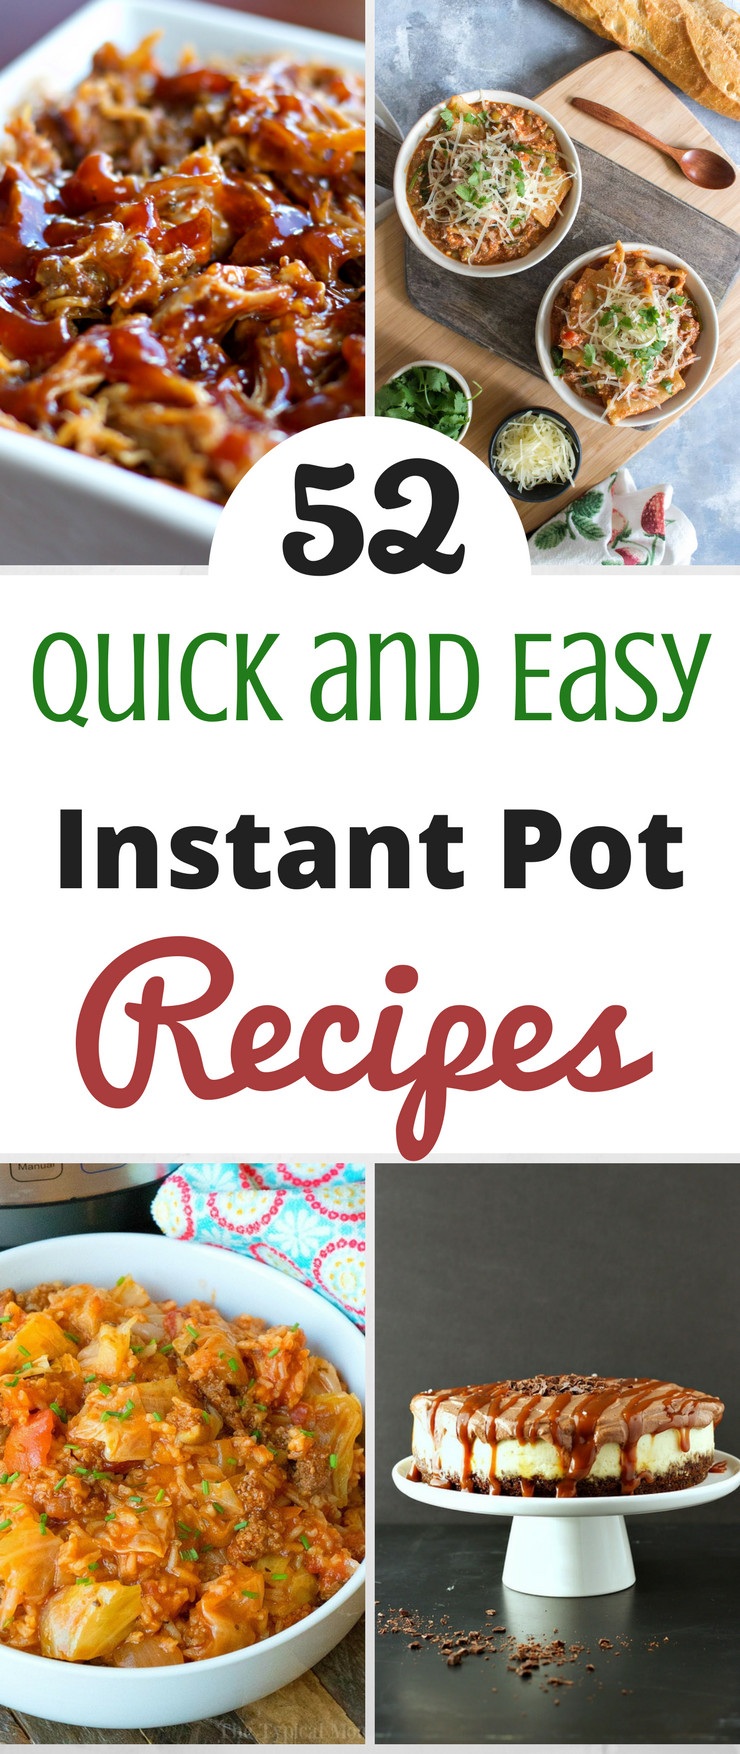 Instant Pot Quick Recipes
 52 Quick and Easy Instant Pot Recipes SlickHousewives